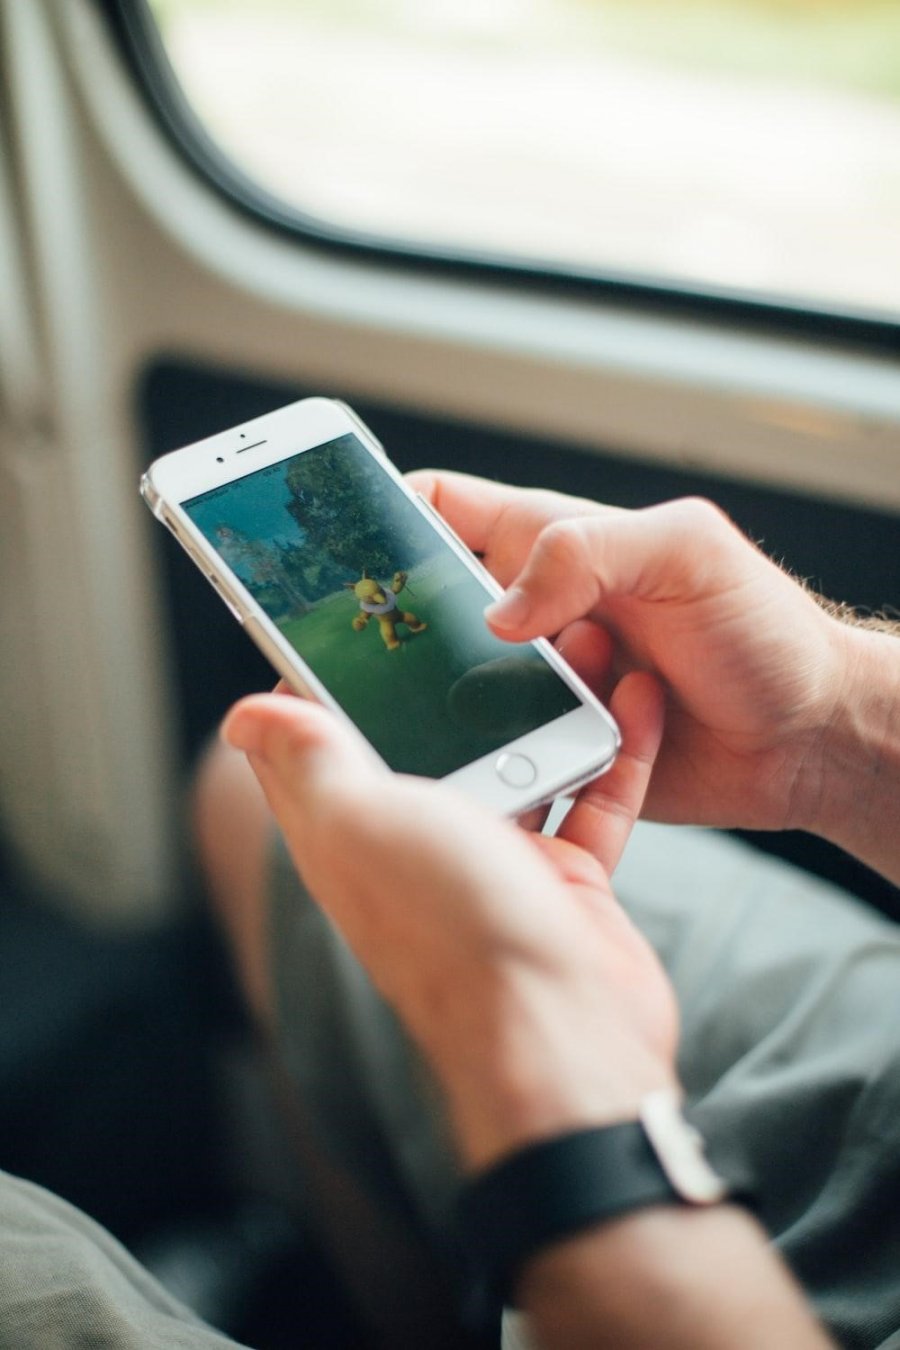 Zwei Hände halten ein Smartphone. Mit einem Daumen wird auf das Display getippt. Auf dem Display ist das Spiel Pokémon Go! zu sehen, das ein gelbes Monster anzeigt.